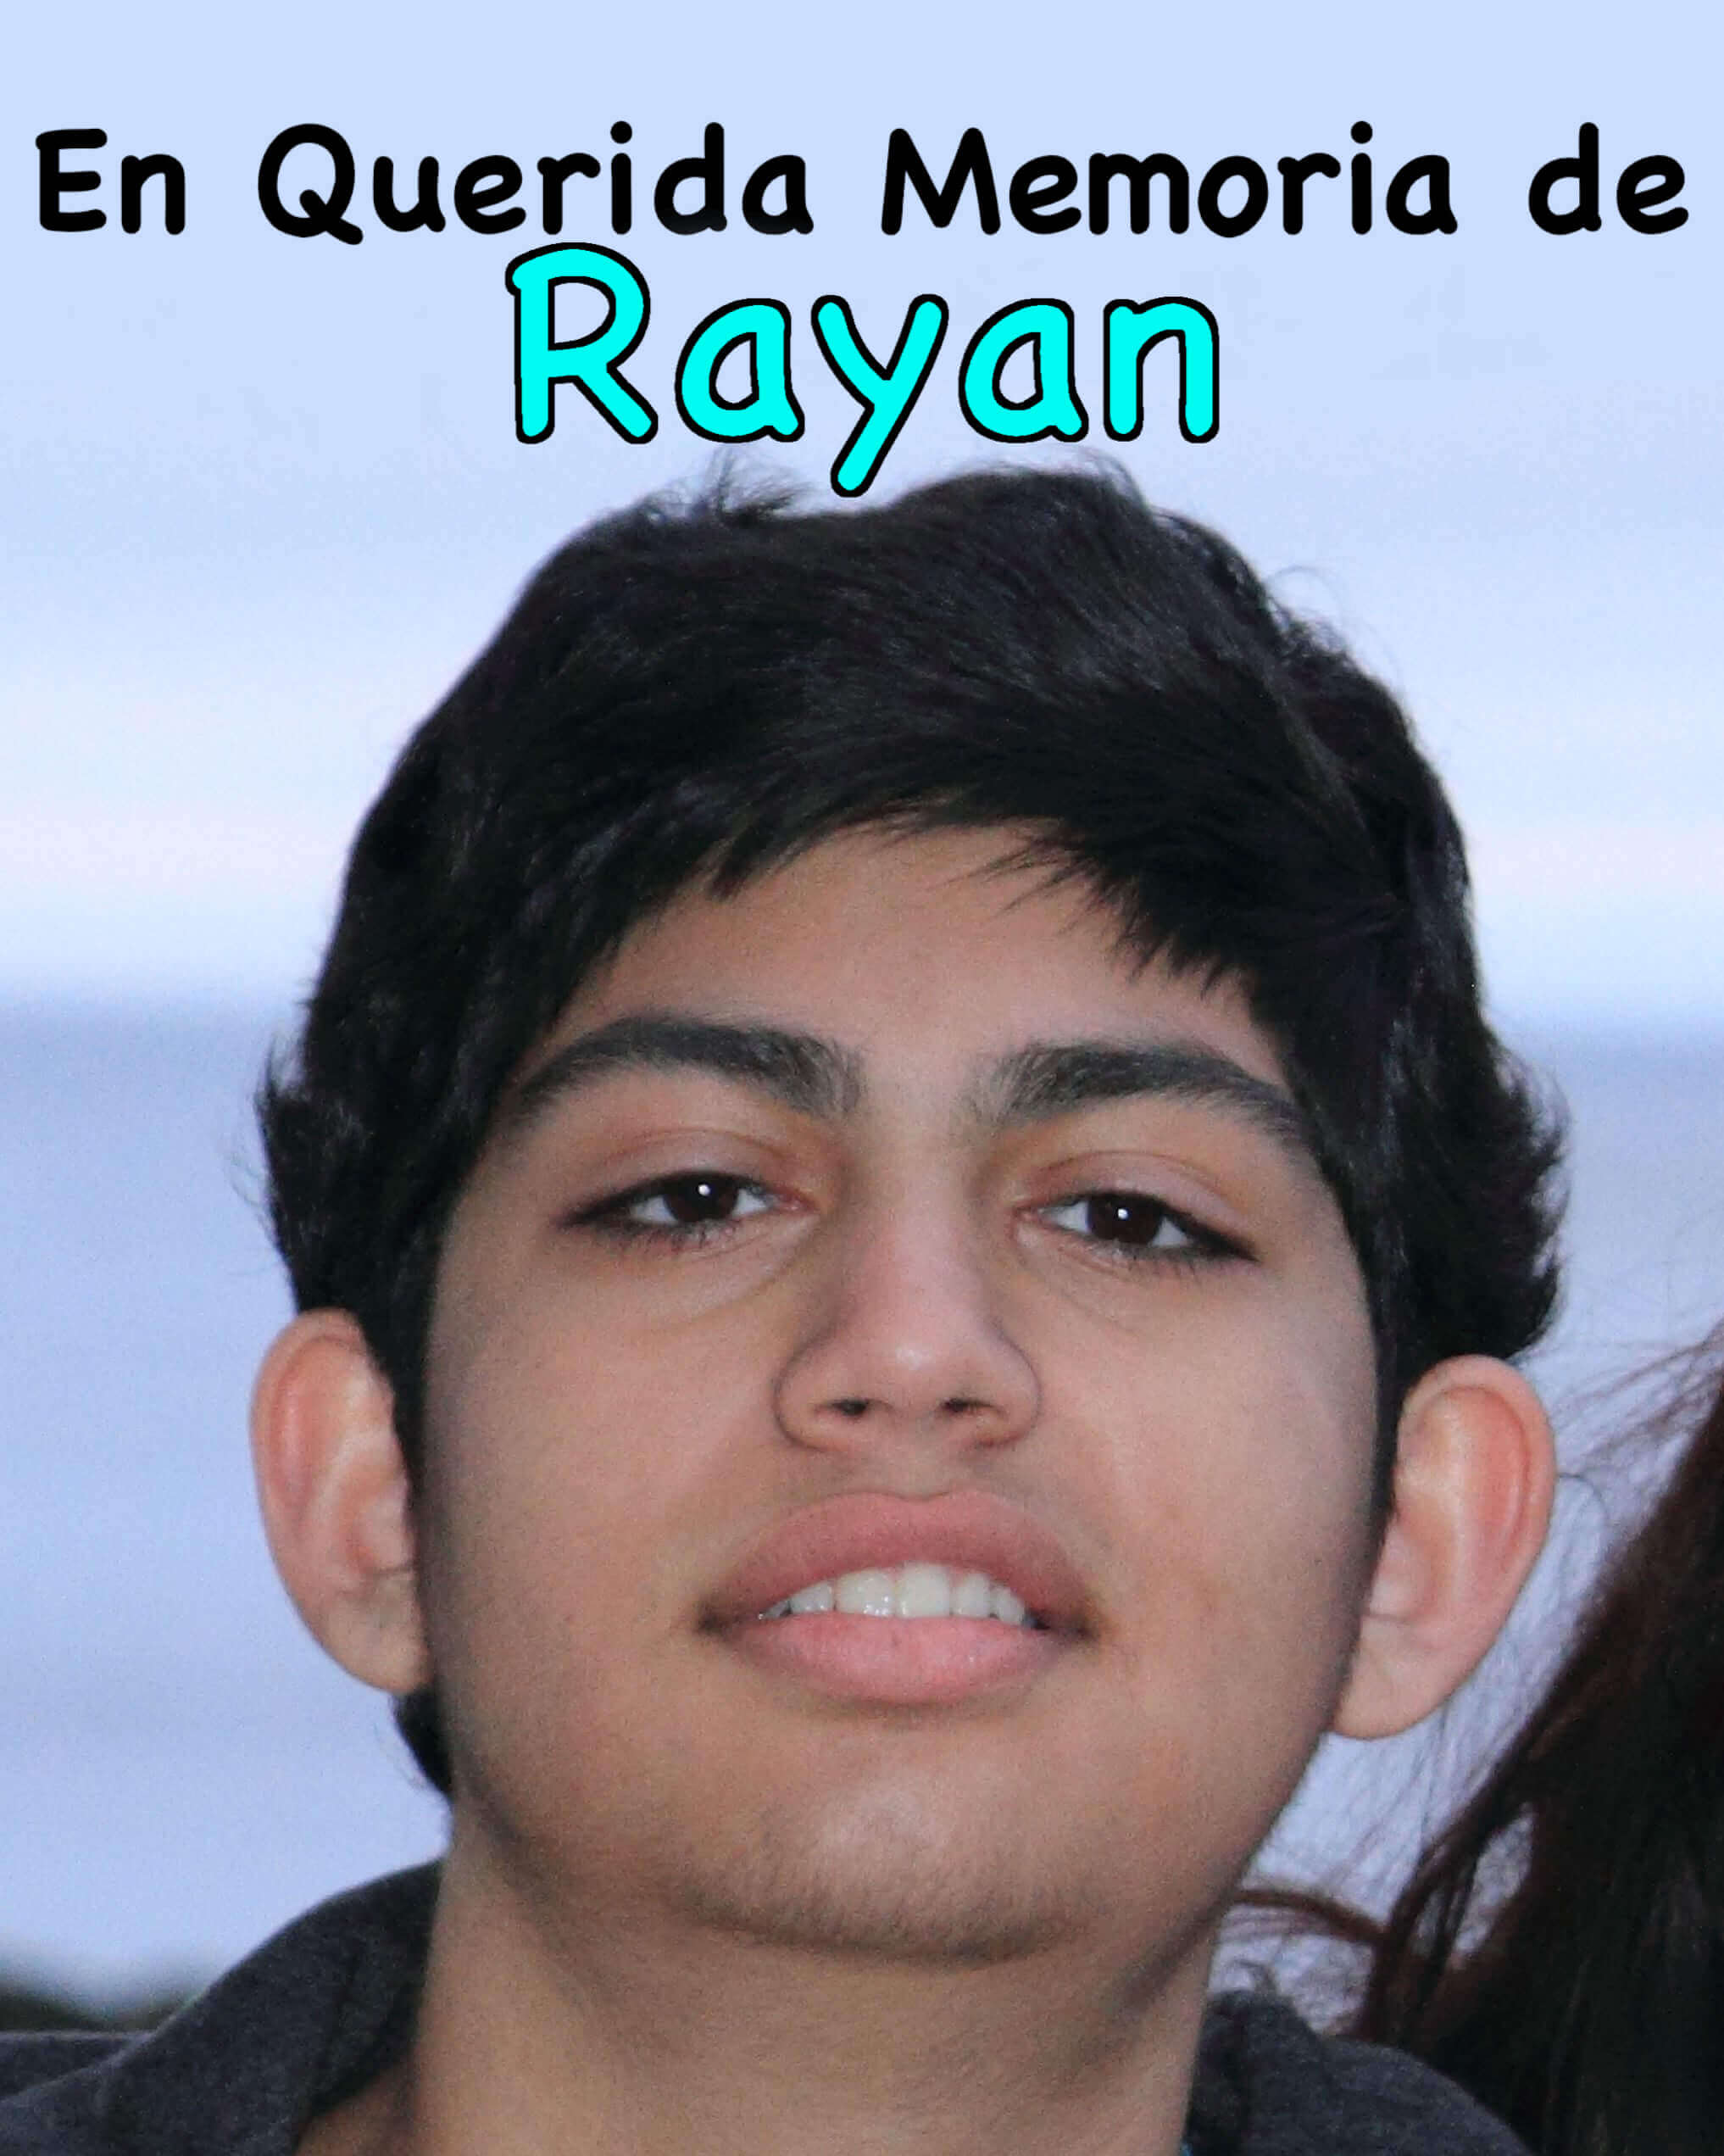 En Querida Memoria de Rayan